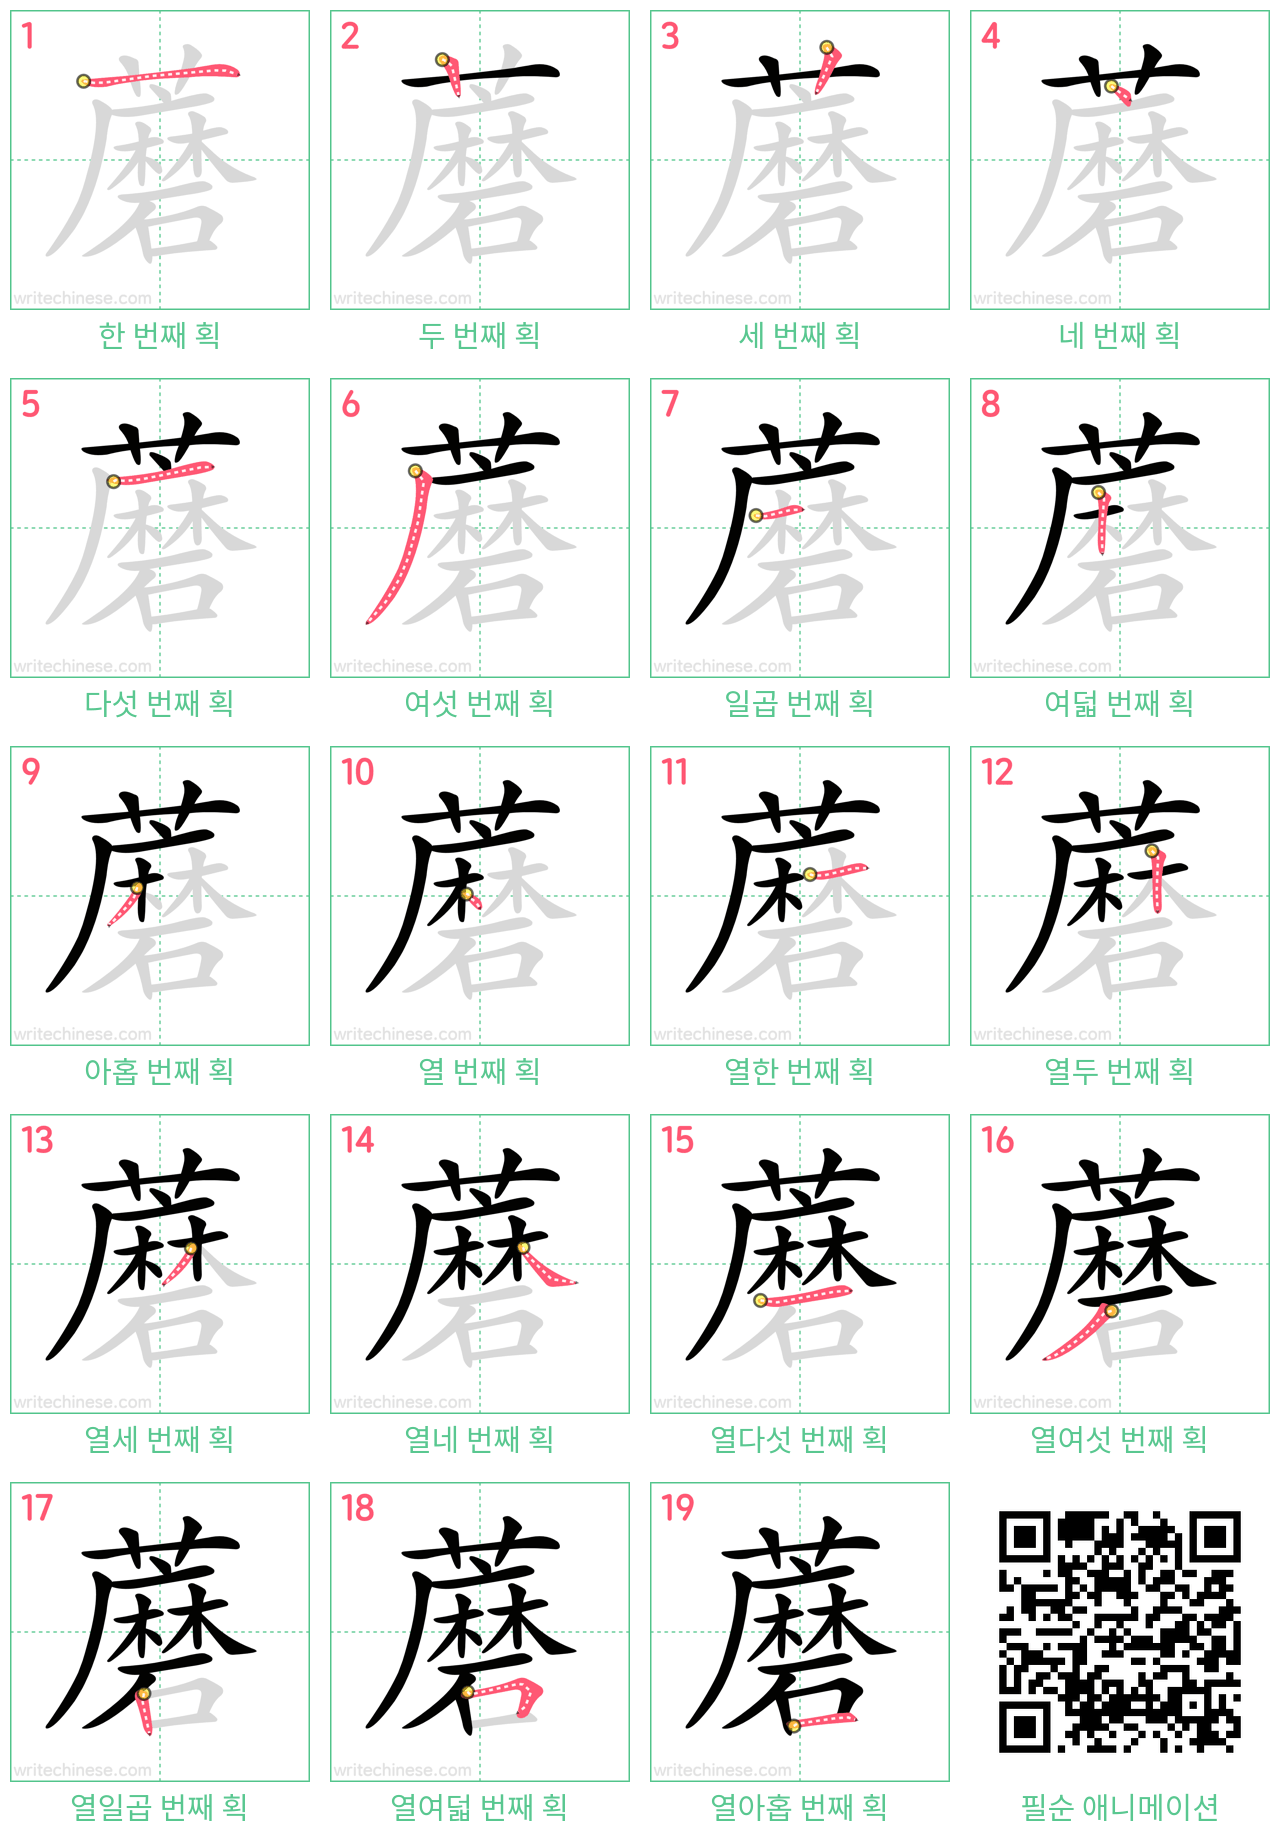 蘑 step-by-step stroke order diagrams